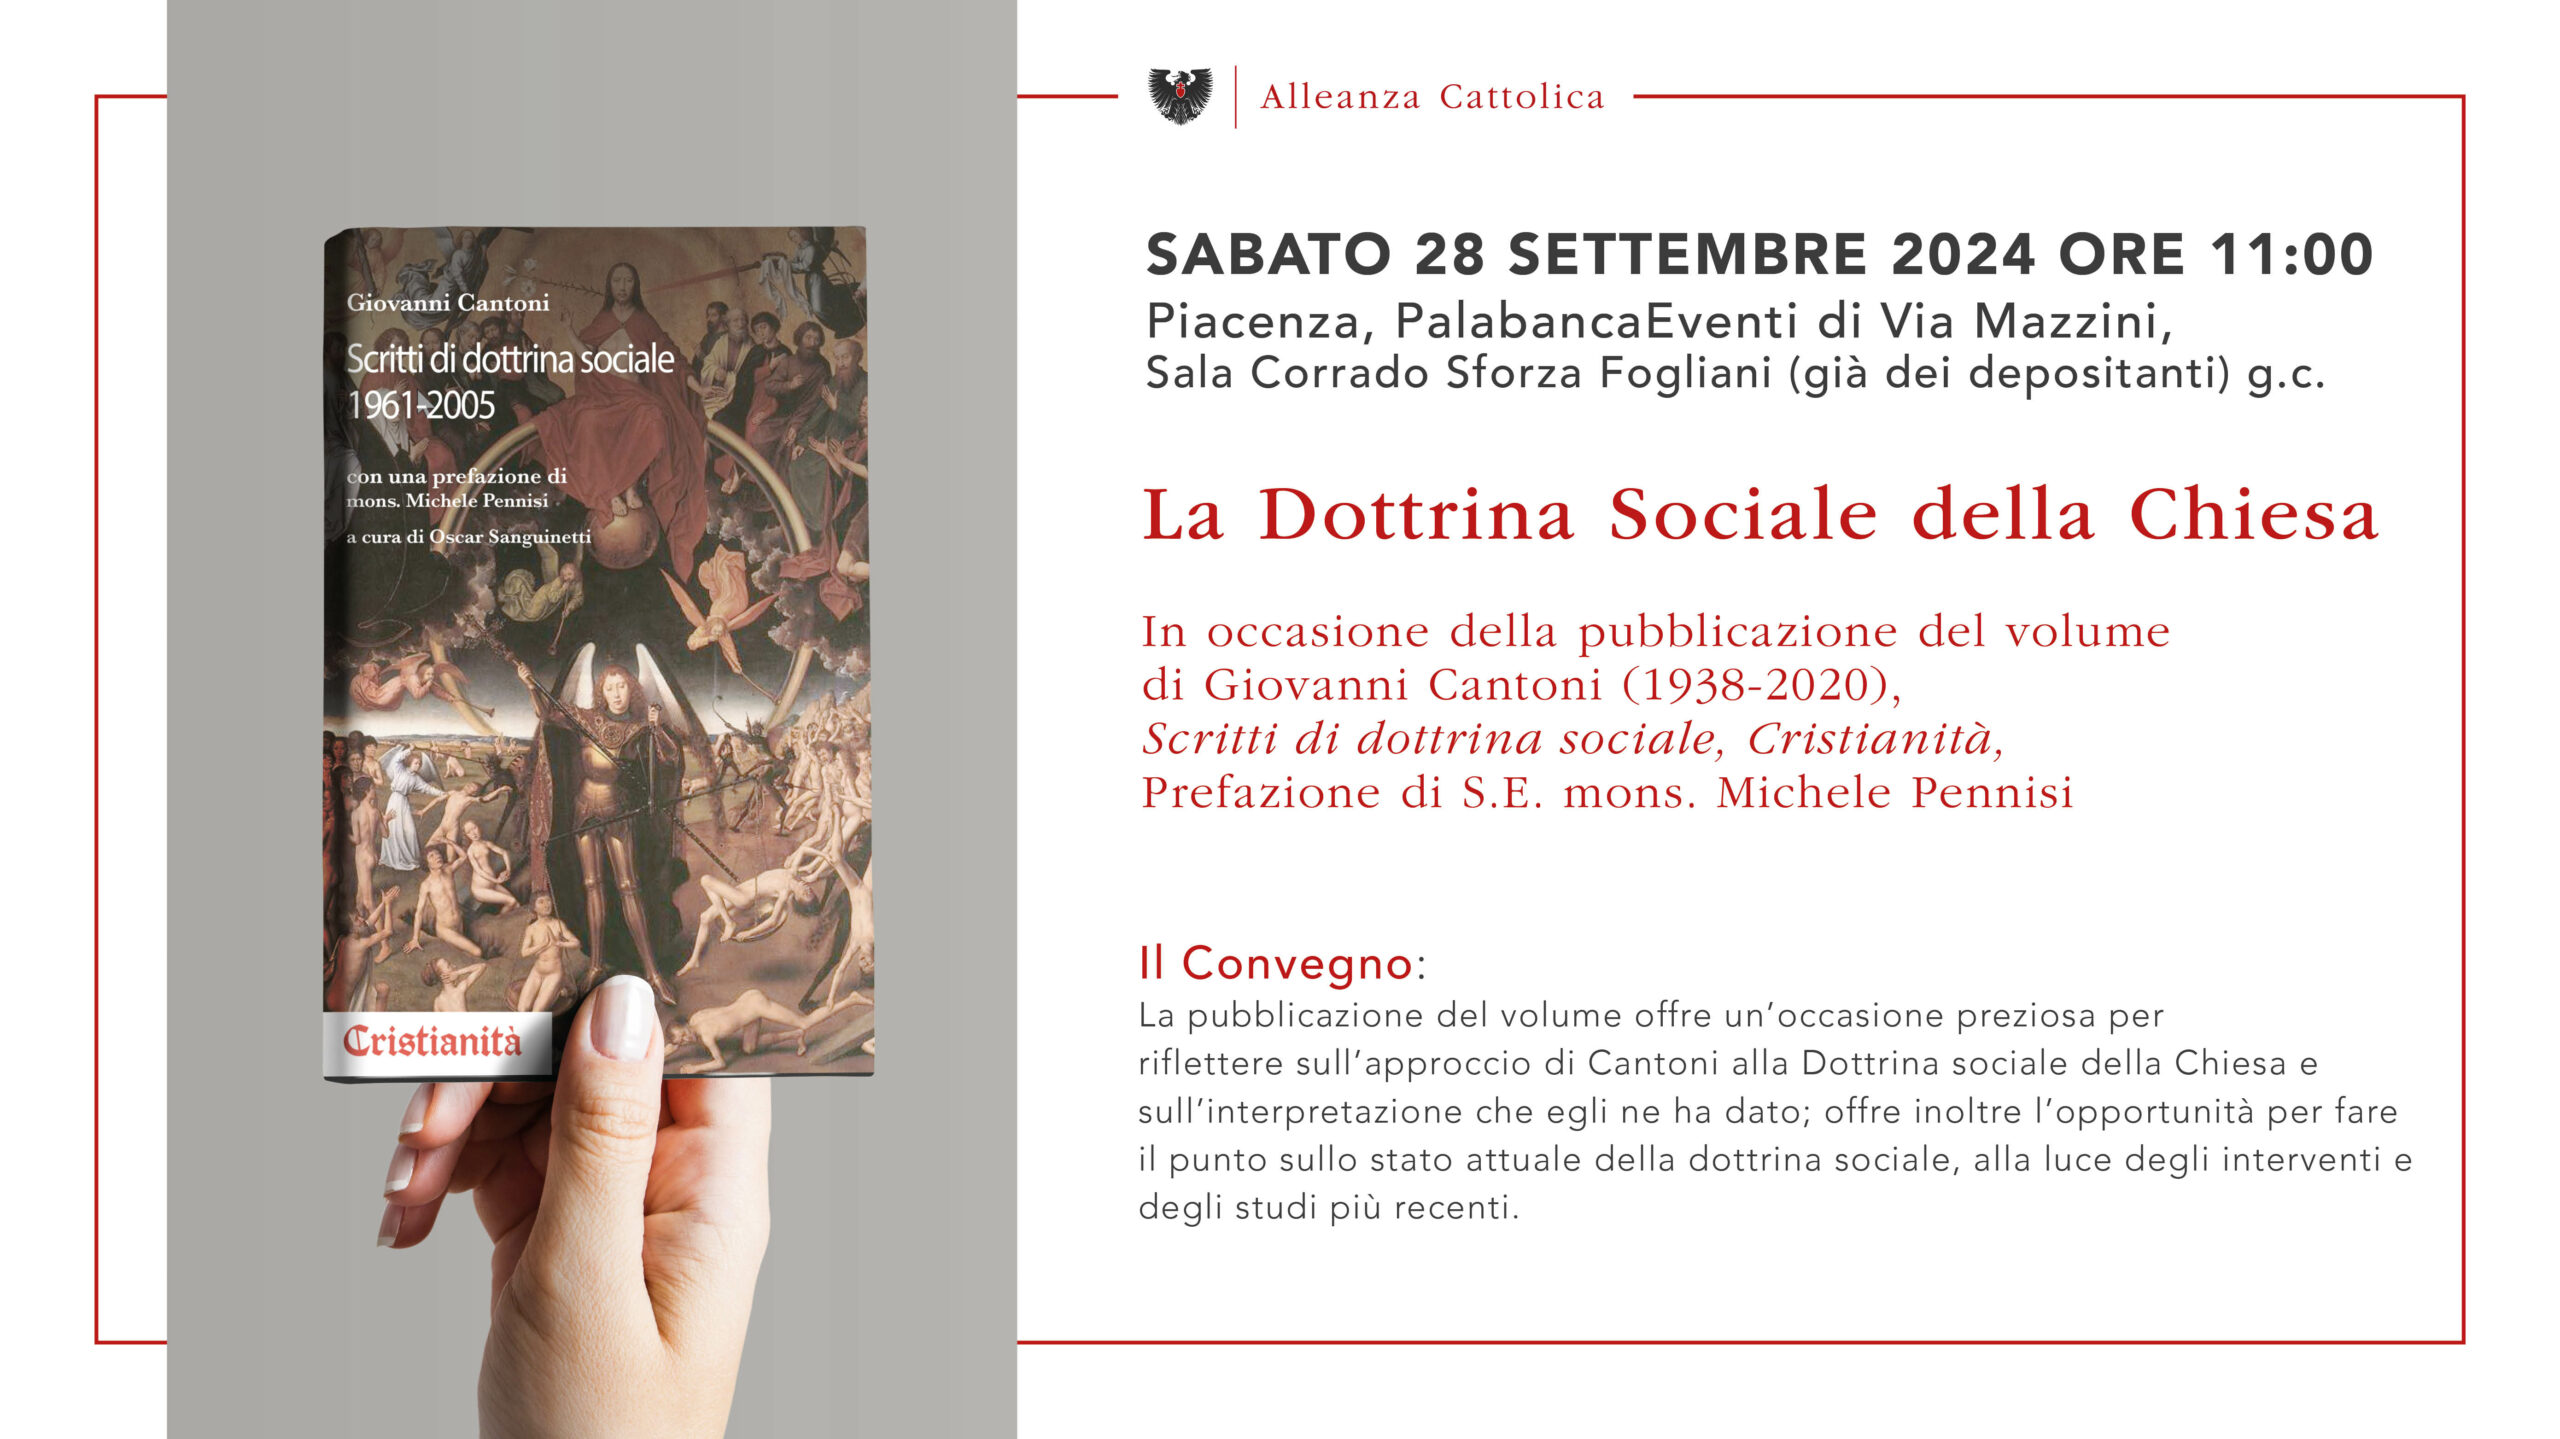 Sabato 28 settembre 2024 Piacenza, PalabancaEventi di Via Mazzini, Sala Corrado Sforza Fogliani (già dei depositanti) g.c.